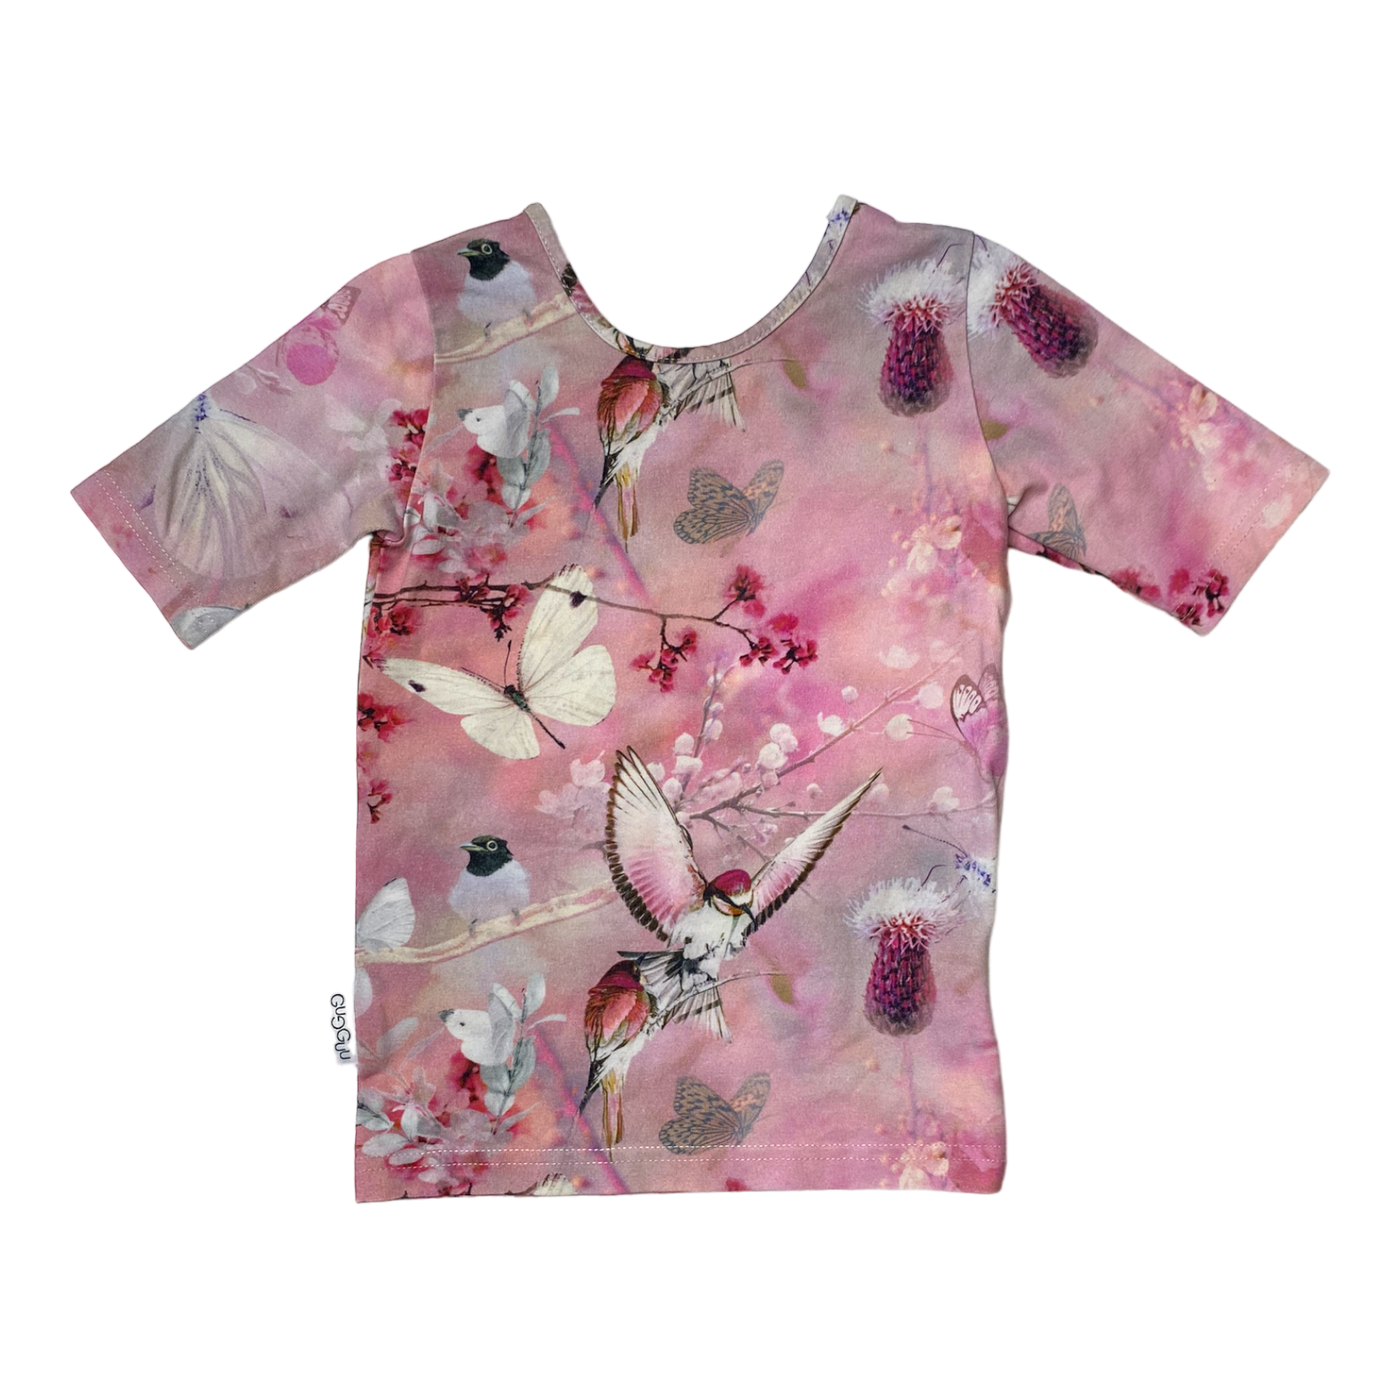 Gugguu t-shirt, butterflies | 86cm